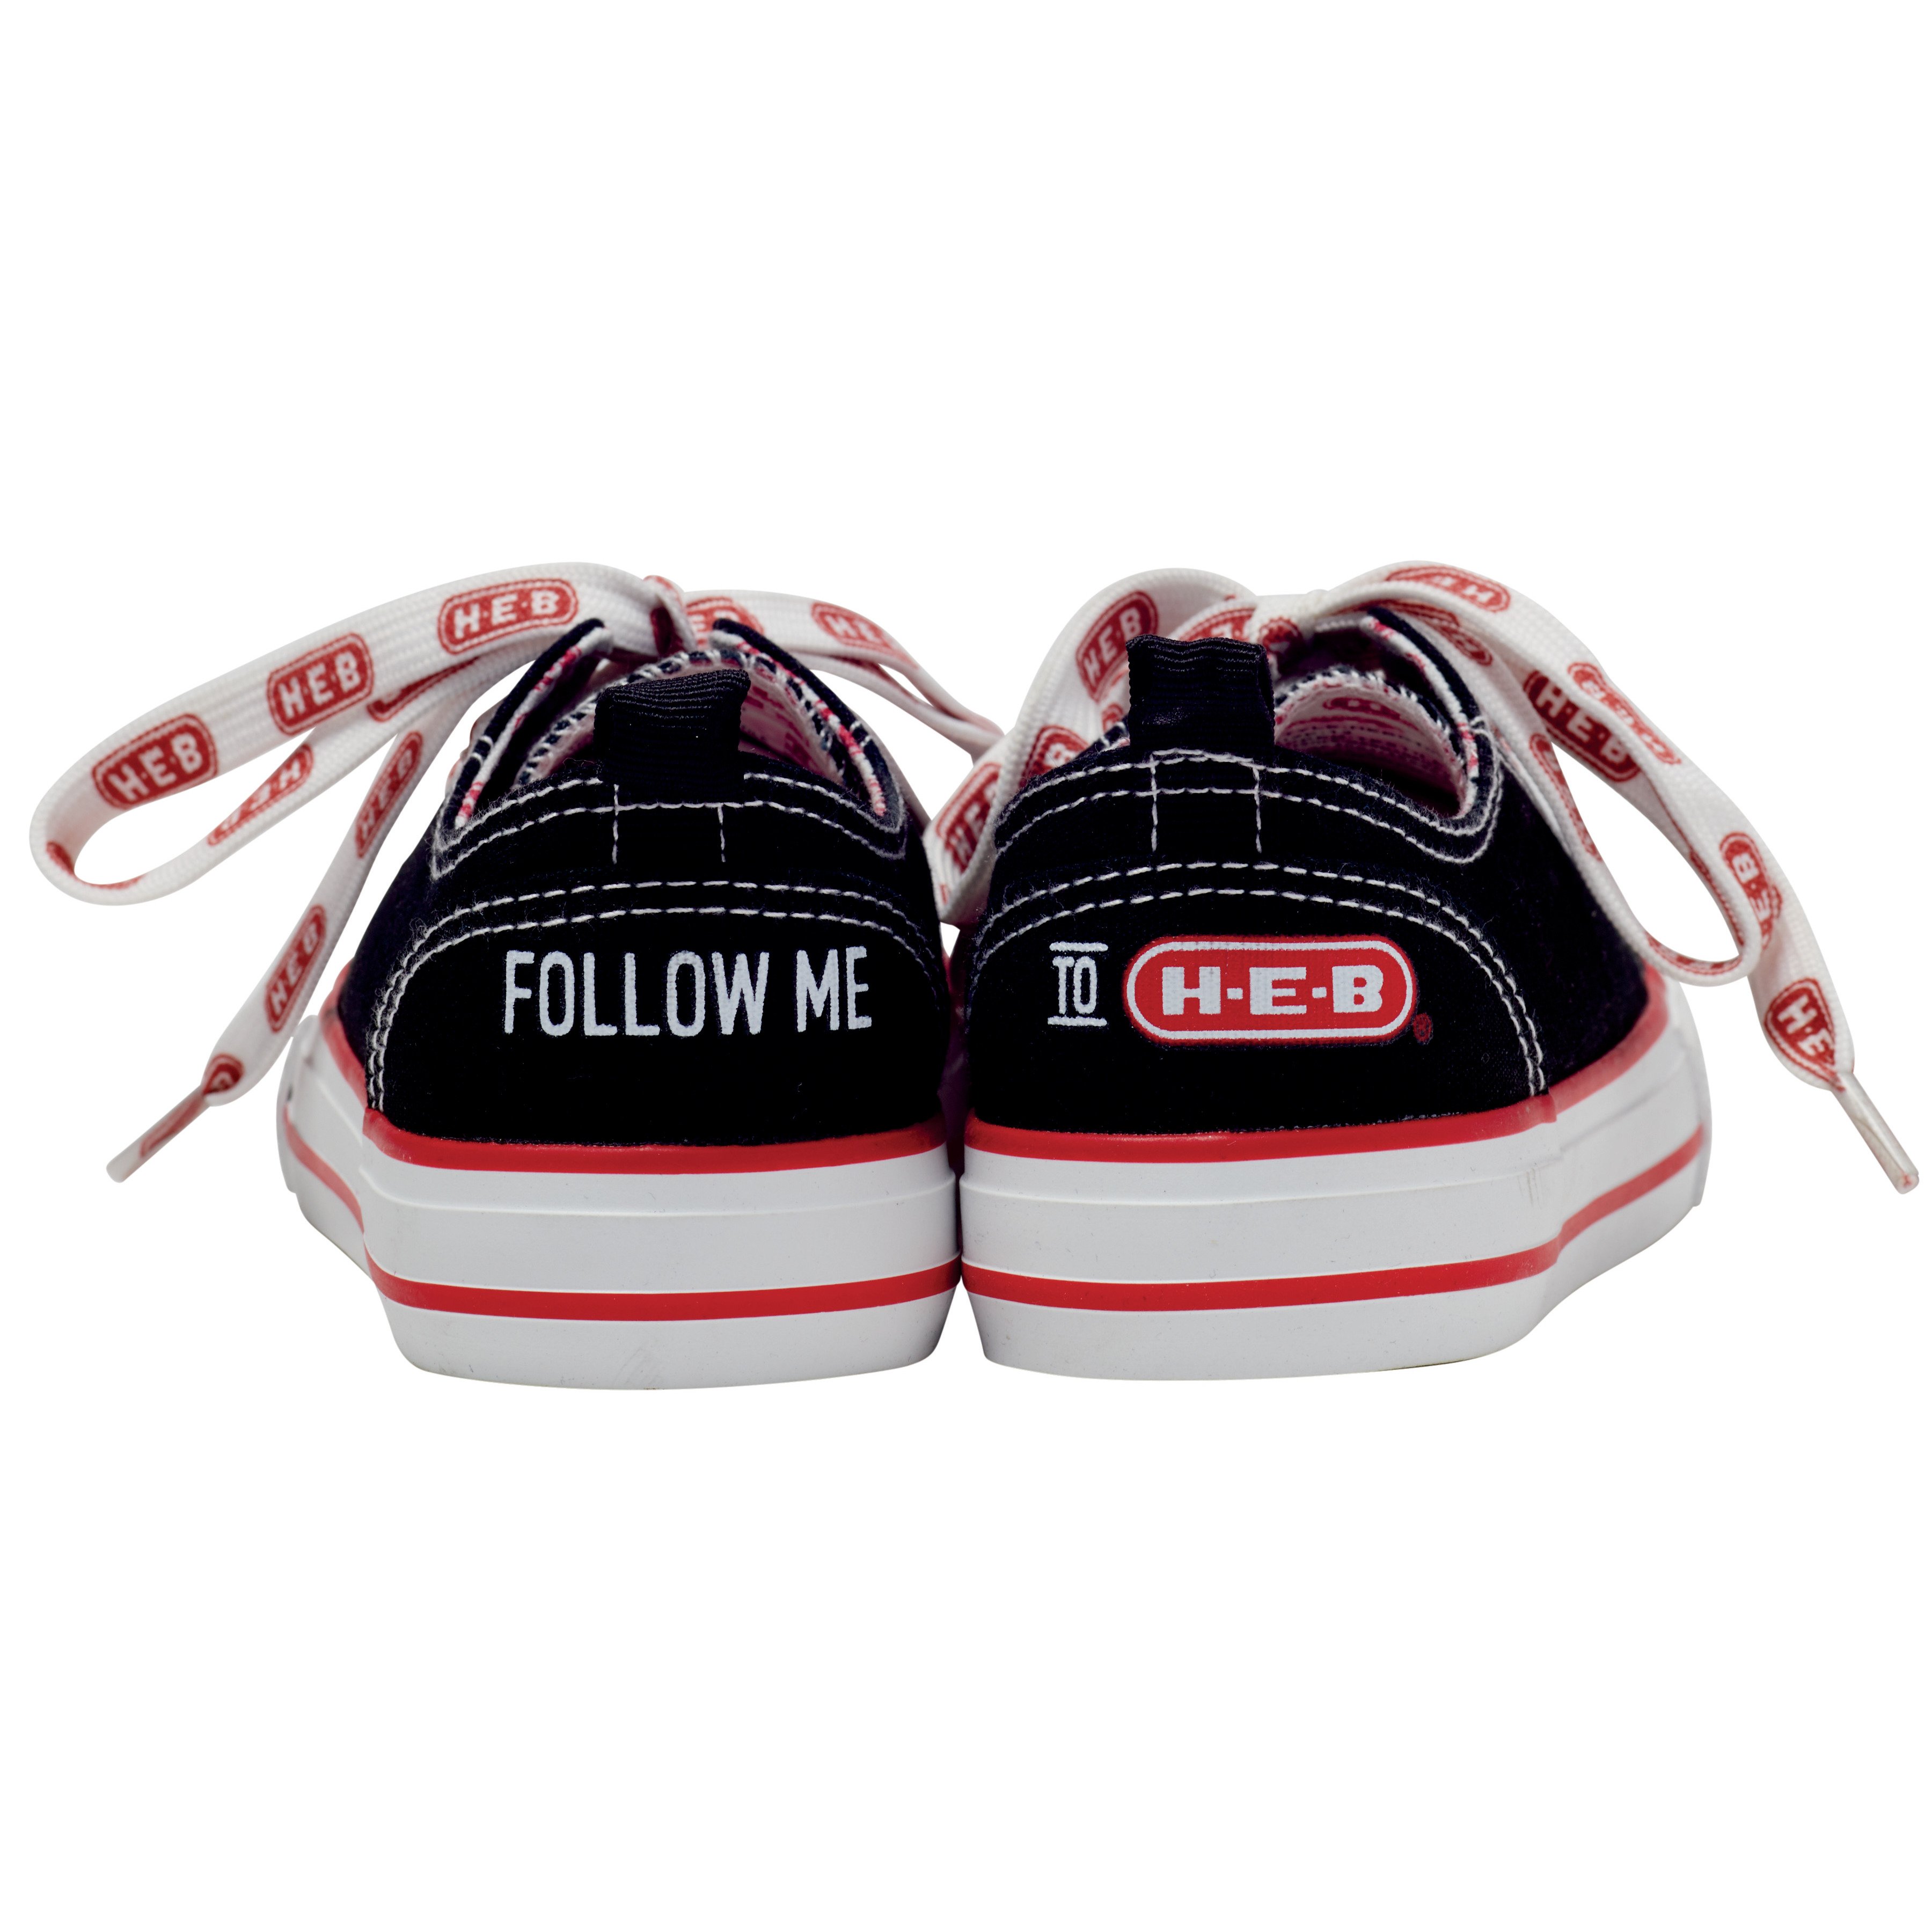 H-E-B Brand Shop Follow Me Kid's Sneaker - Shop Shoes at H-E-B